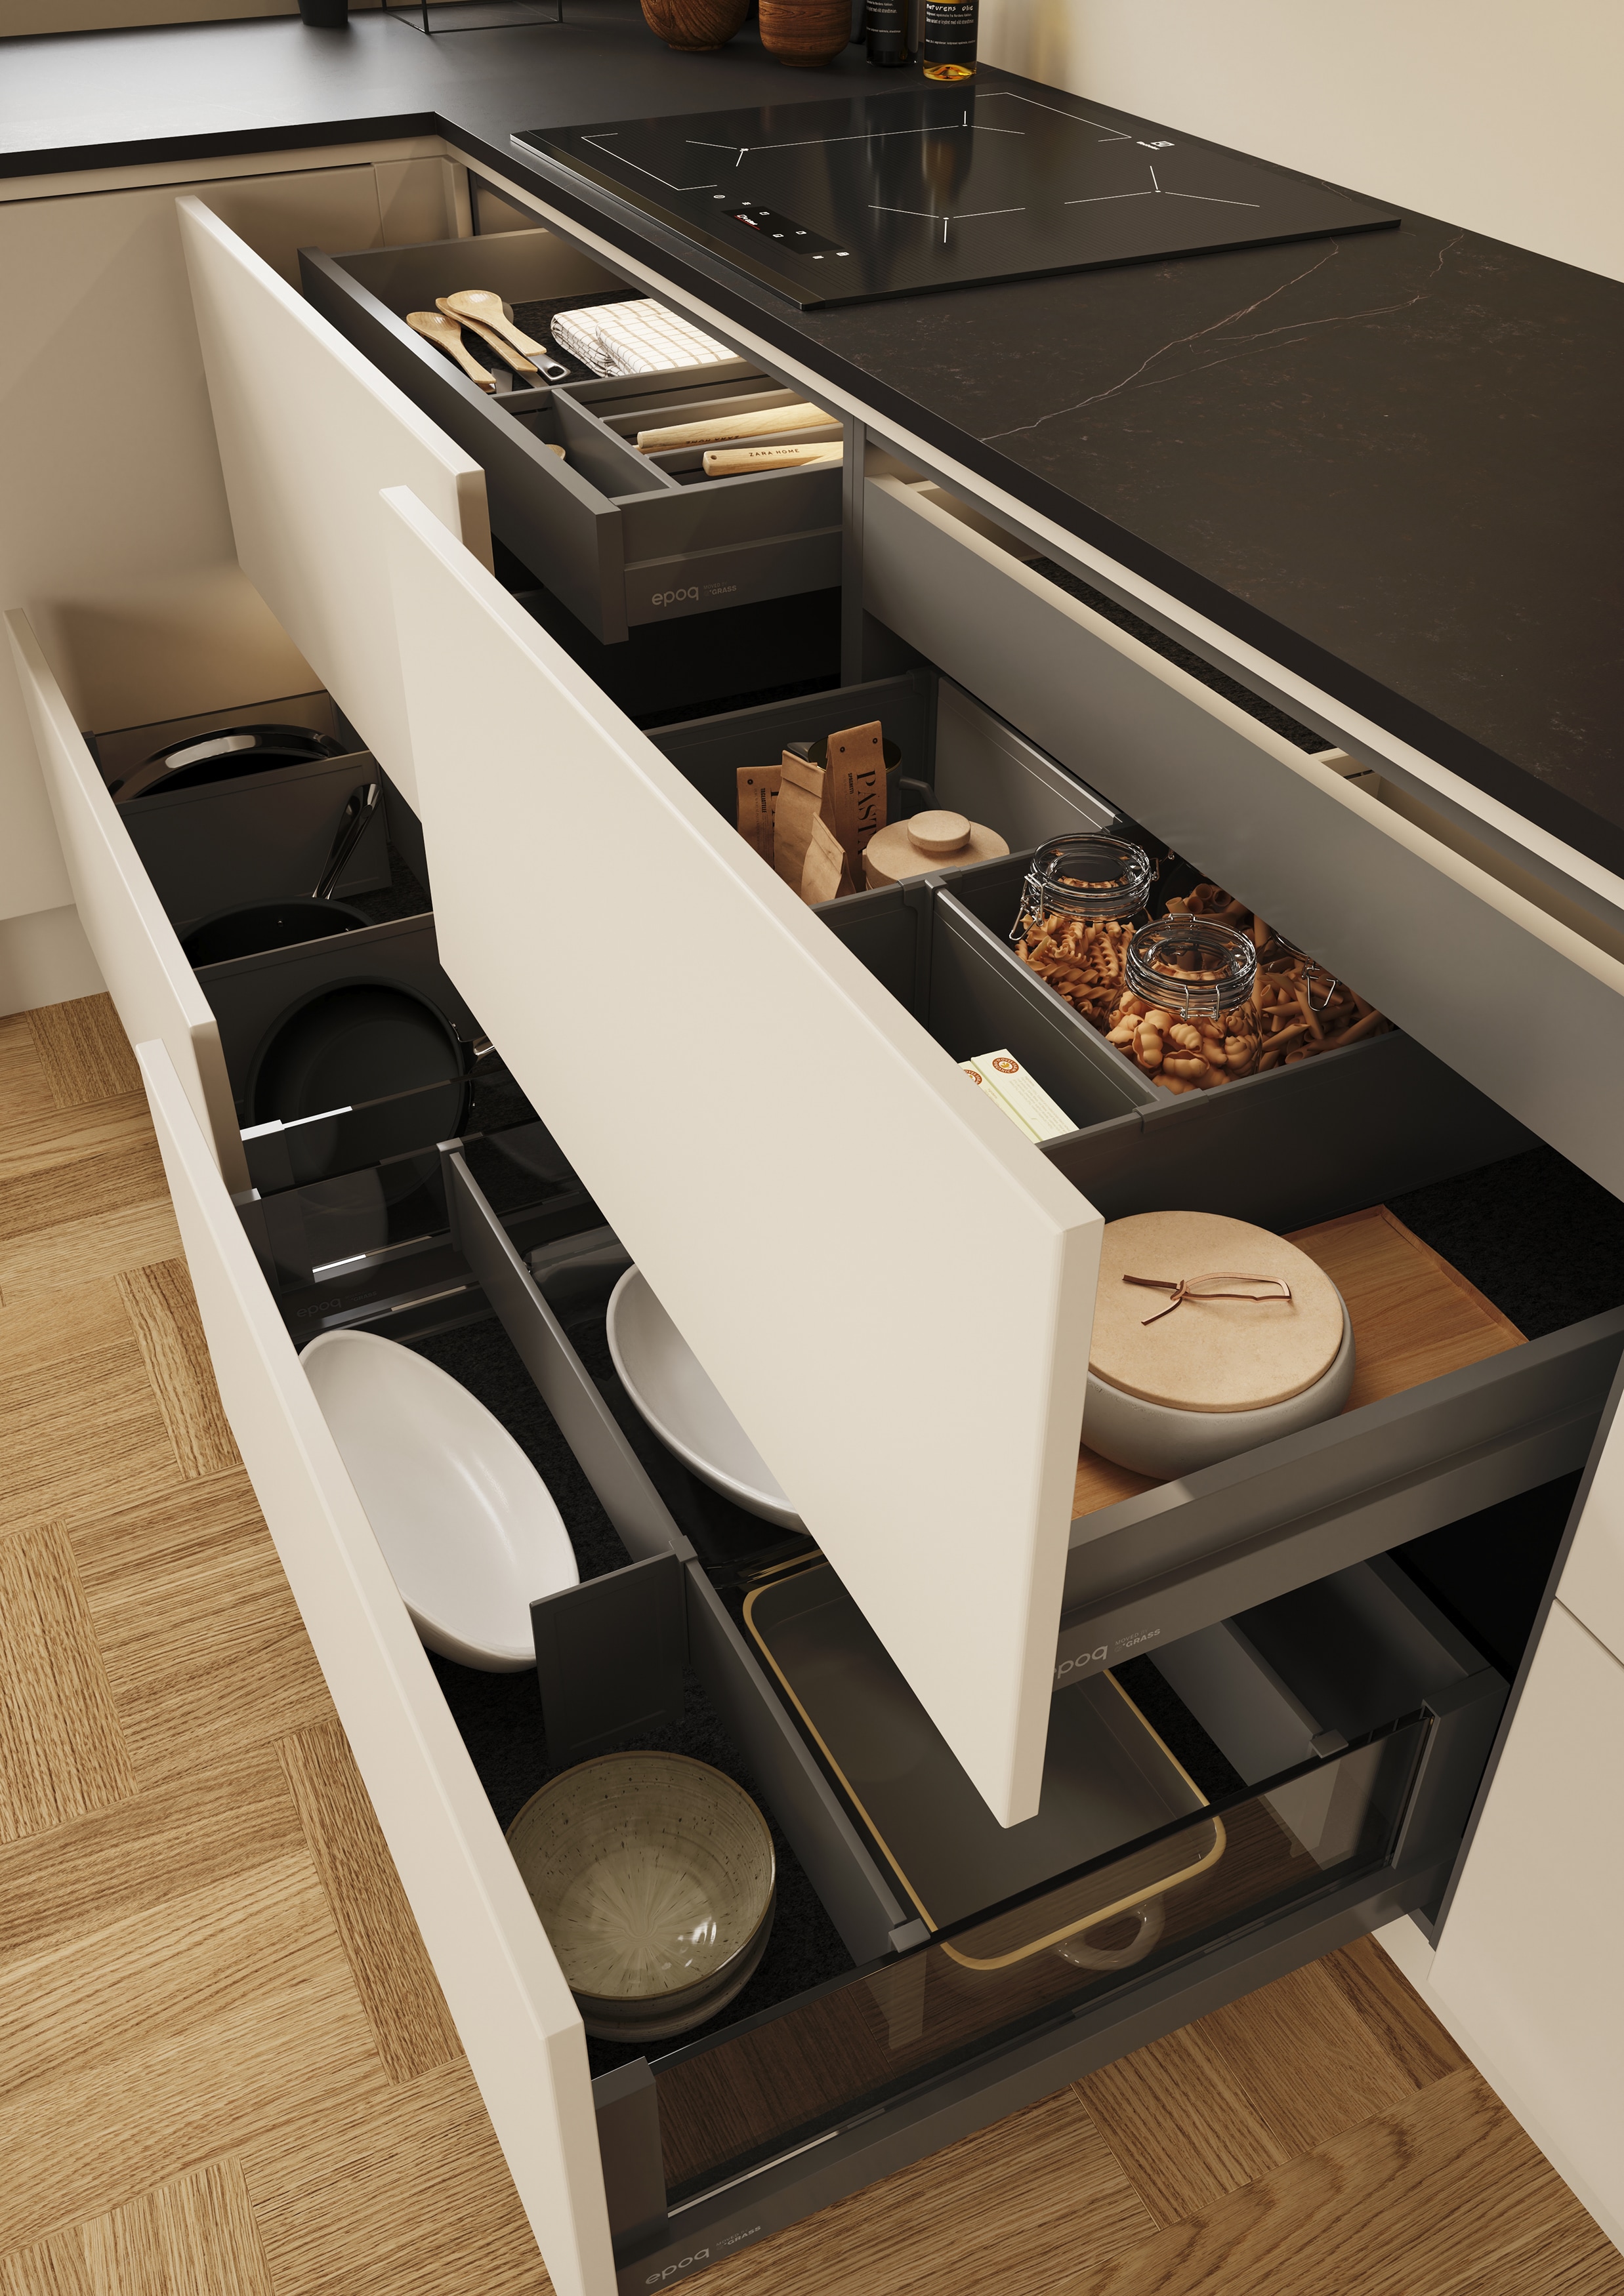 EPOQ - K30C - Kitchen - Trend Greige - Beige - Dekton Worktop - open drawer - drawer divider - cutlery tray - hob